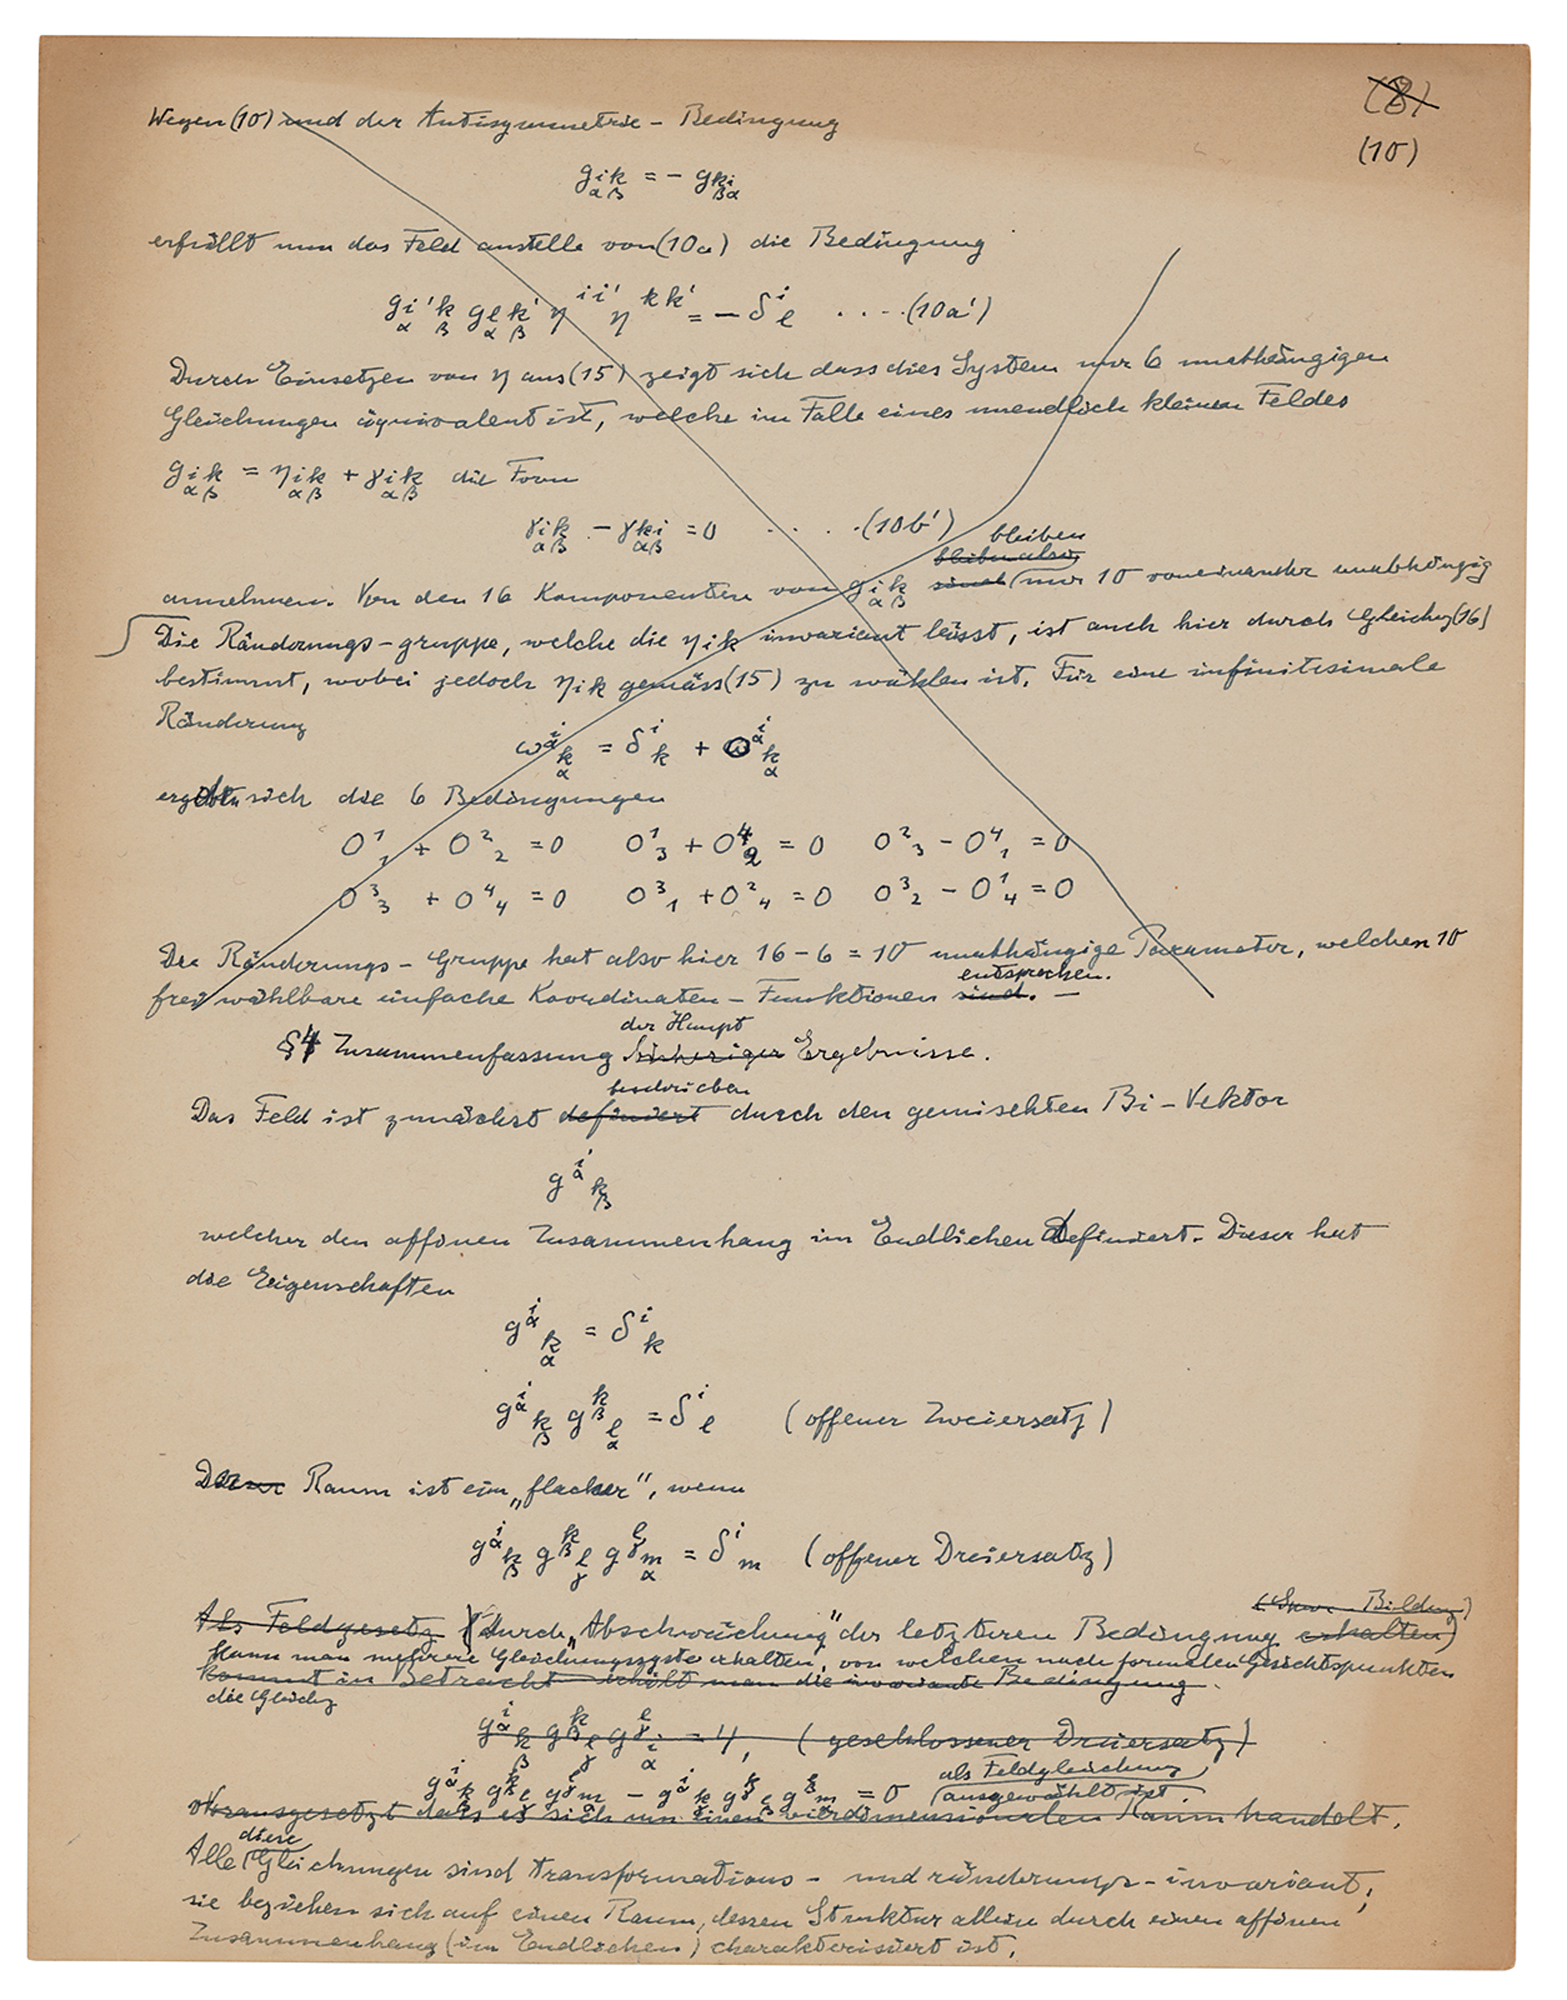 Lot #14 Albert Einstein Handwritten Scientific Manuscript